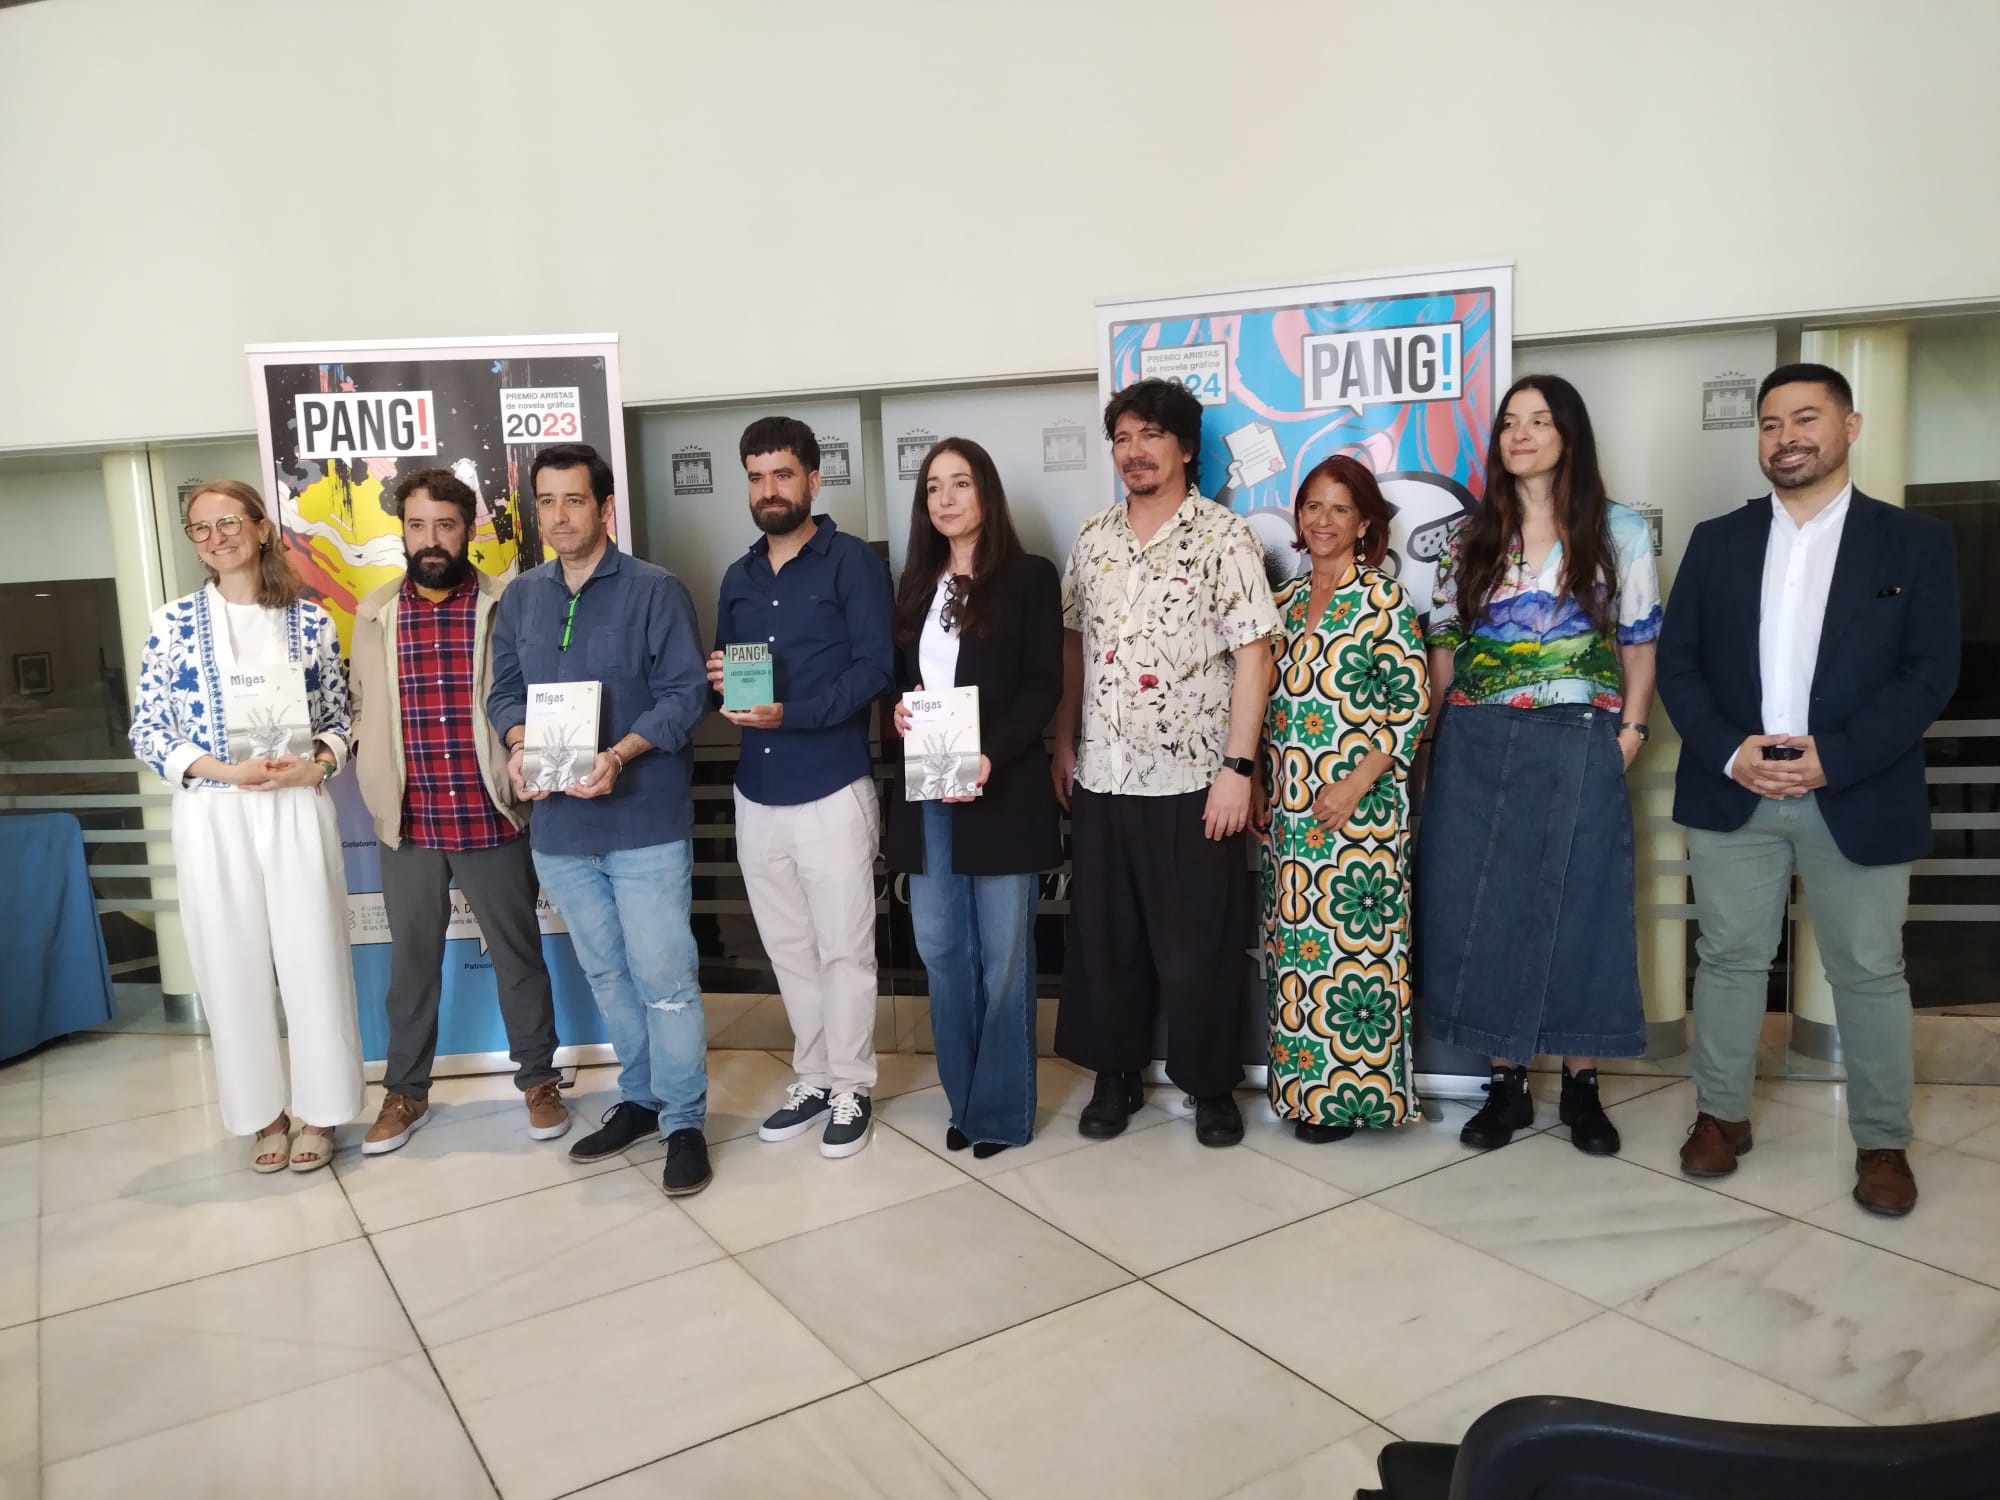 Image 1 of article Javier Castañeda recibe el premio PANG! de novela gráfica patrocinado por la Fundación Extremeña de la Cultura